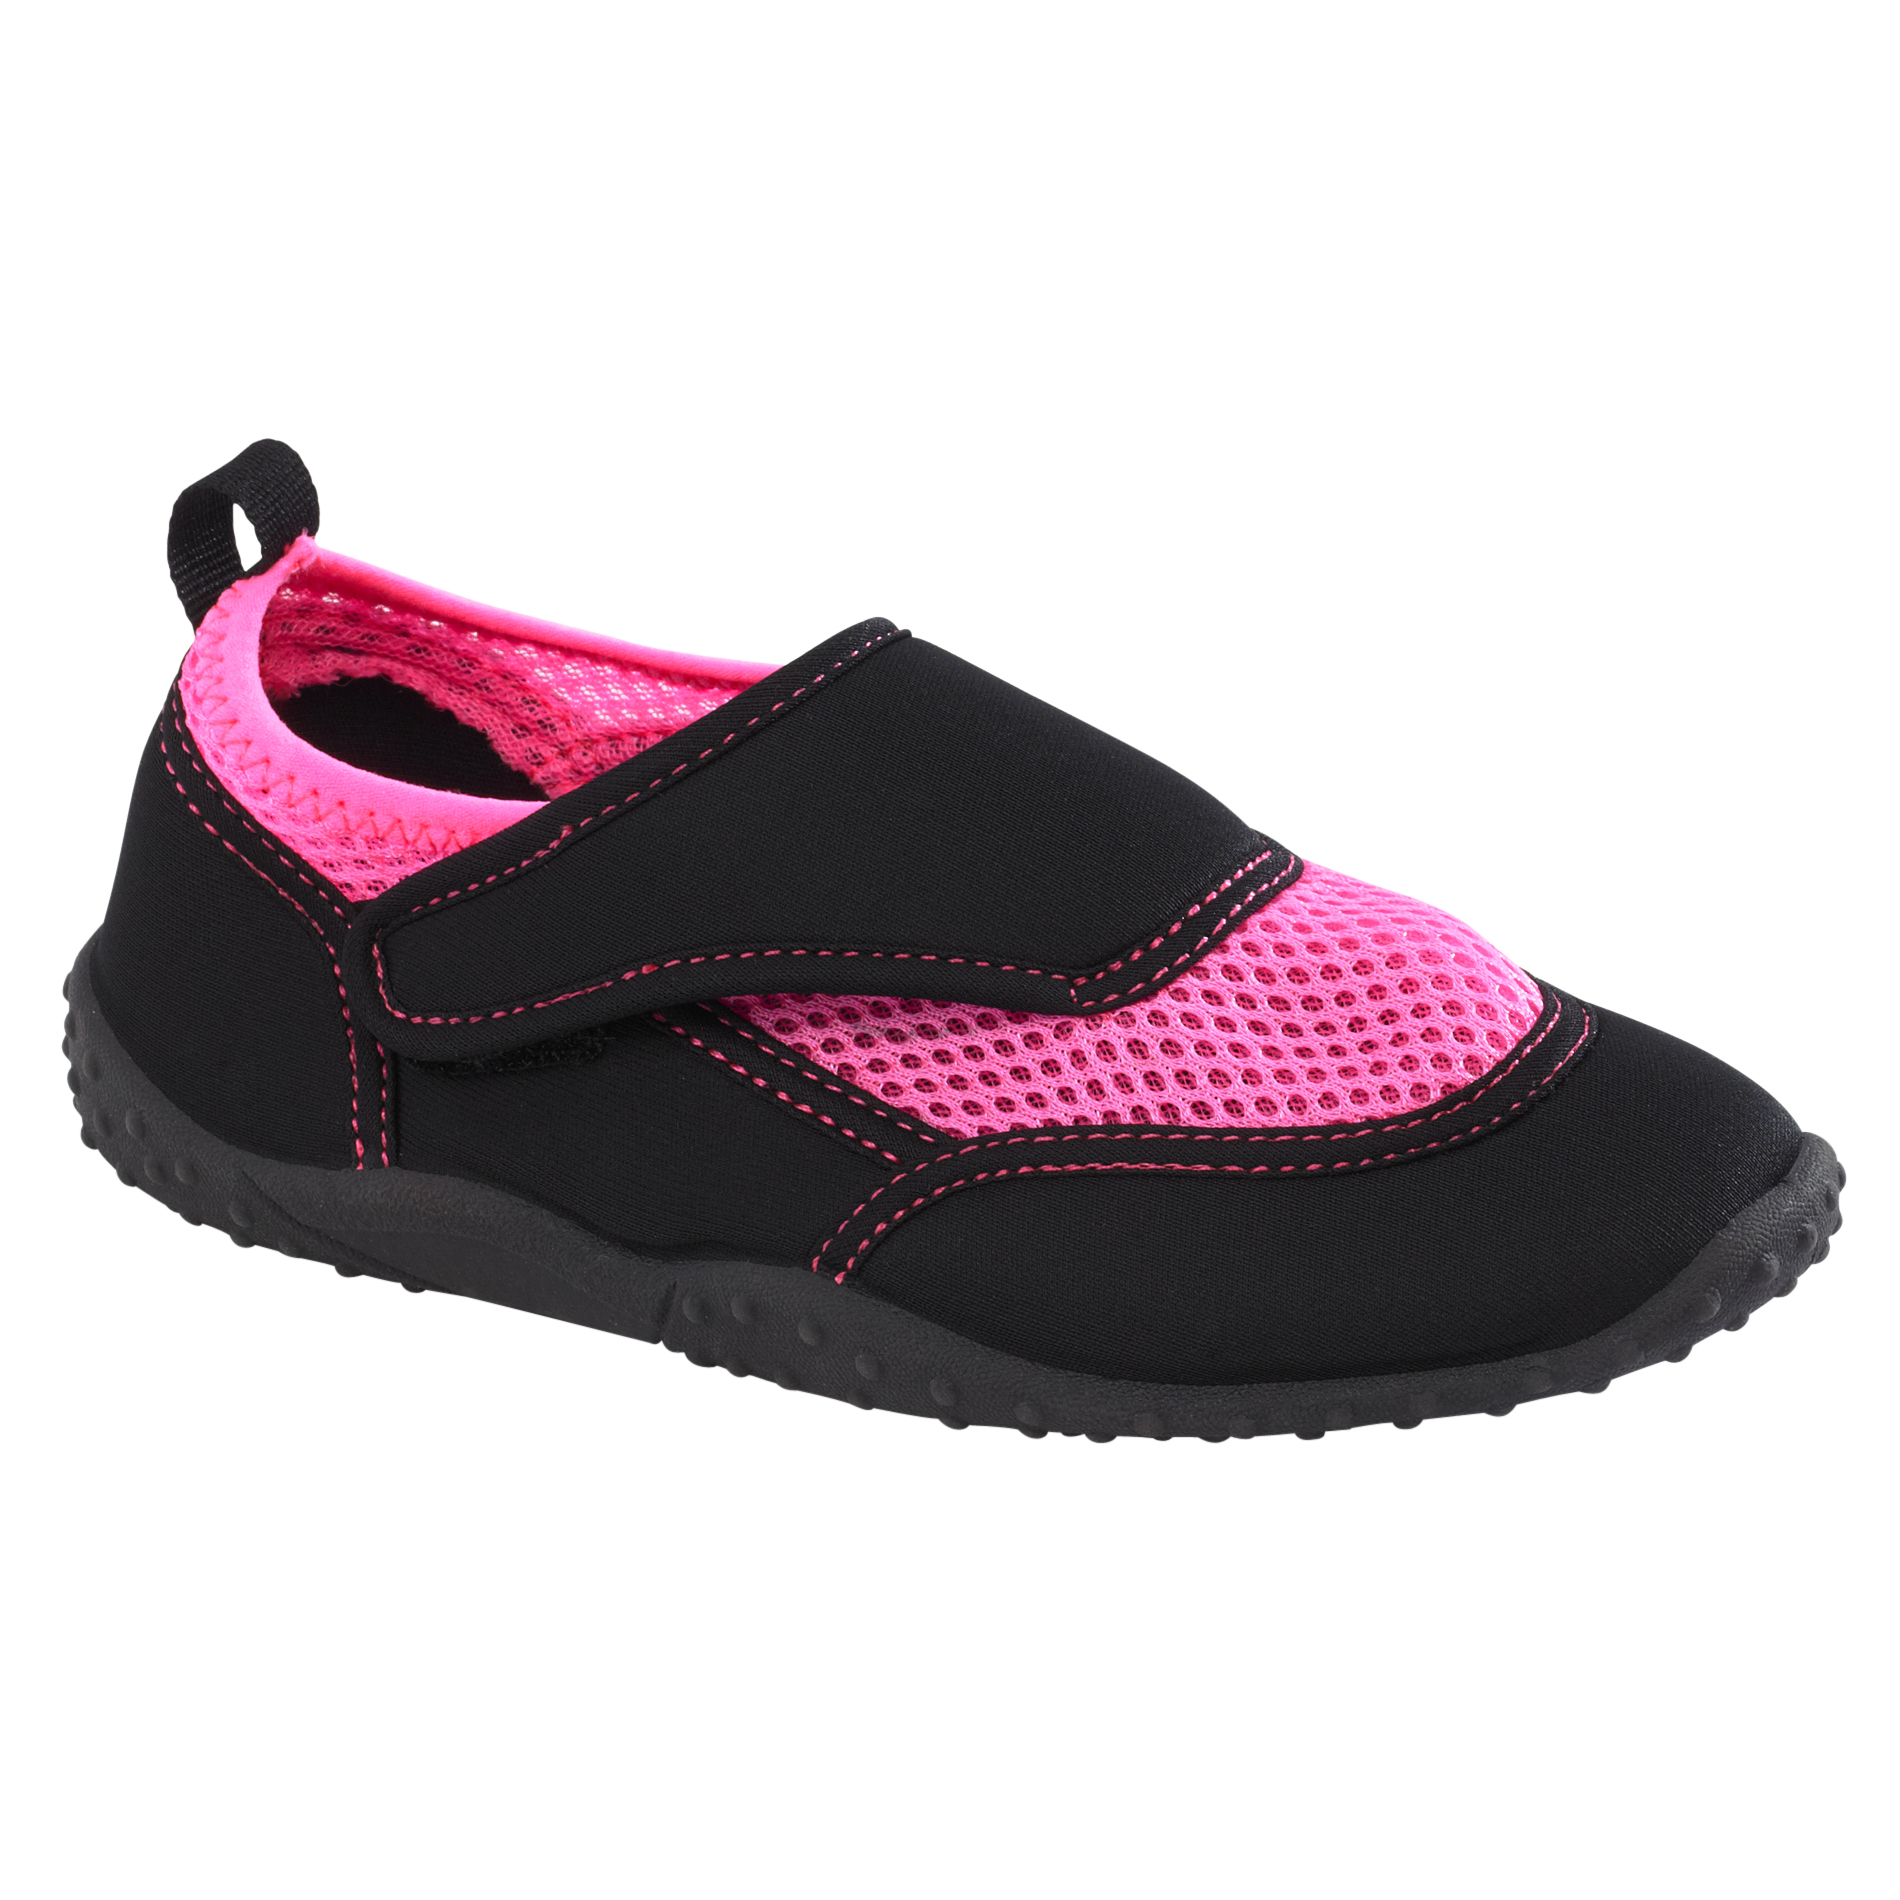 Girl's Sandal Aqua - Pink